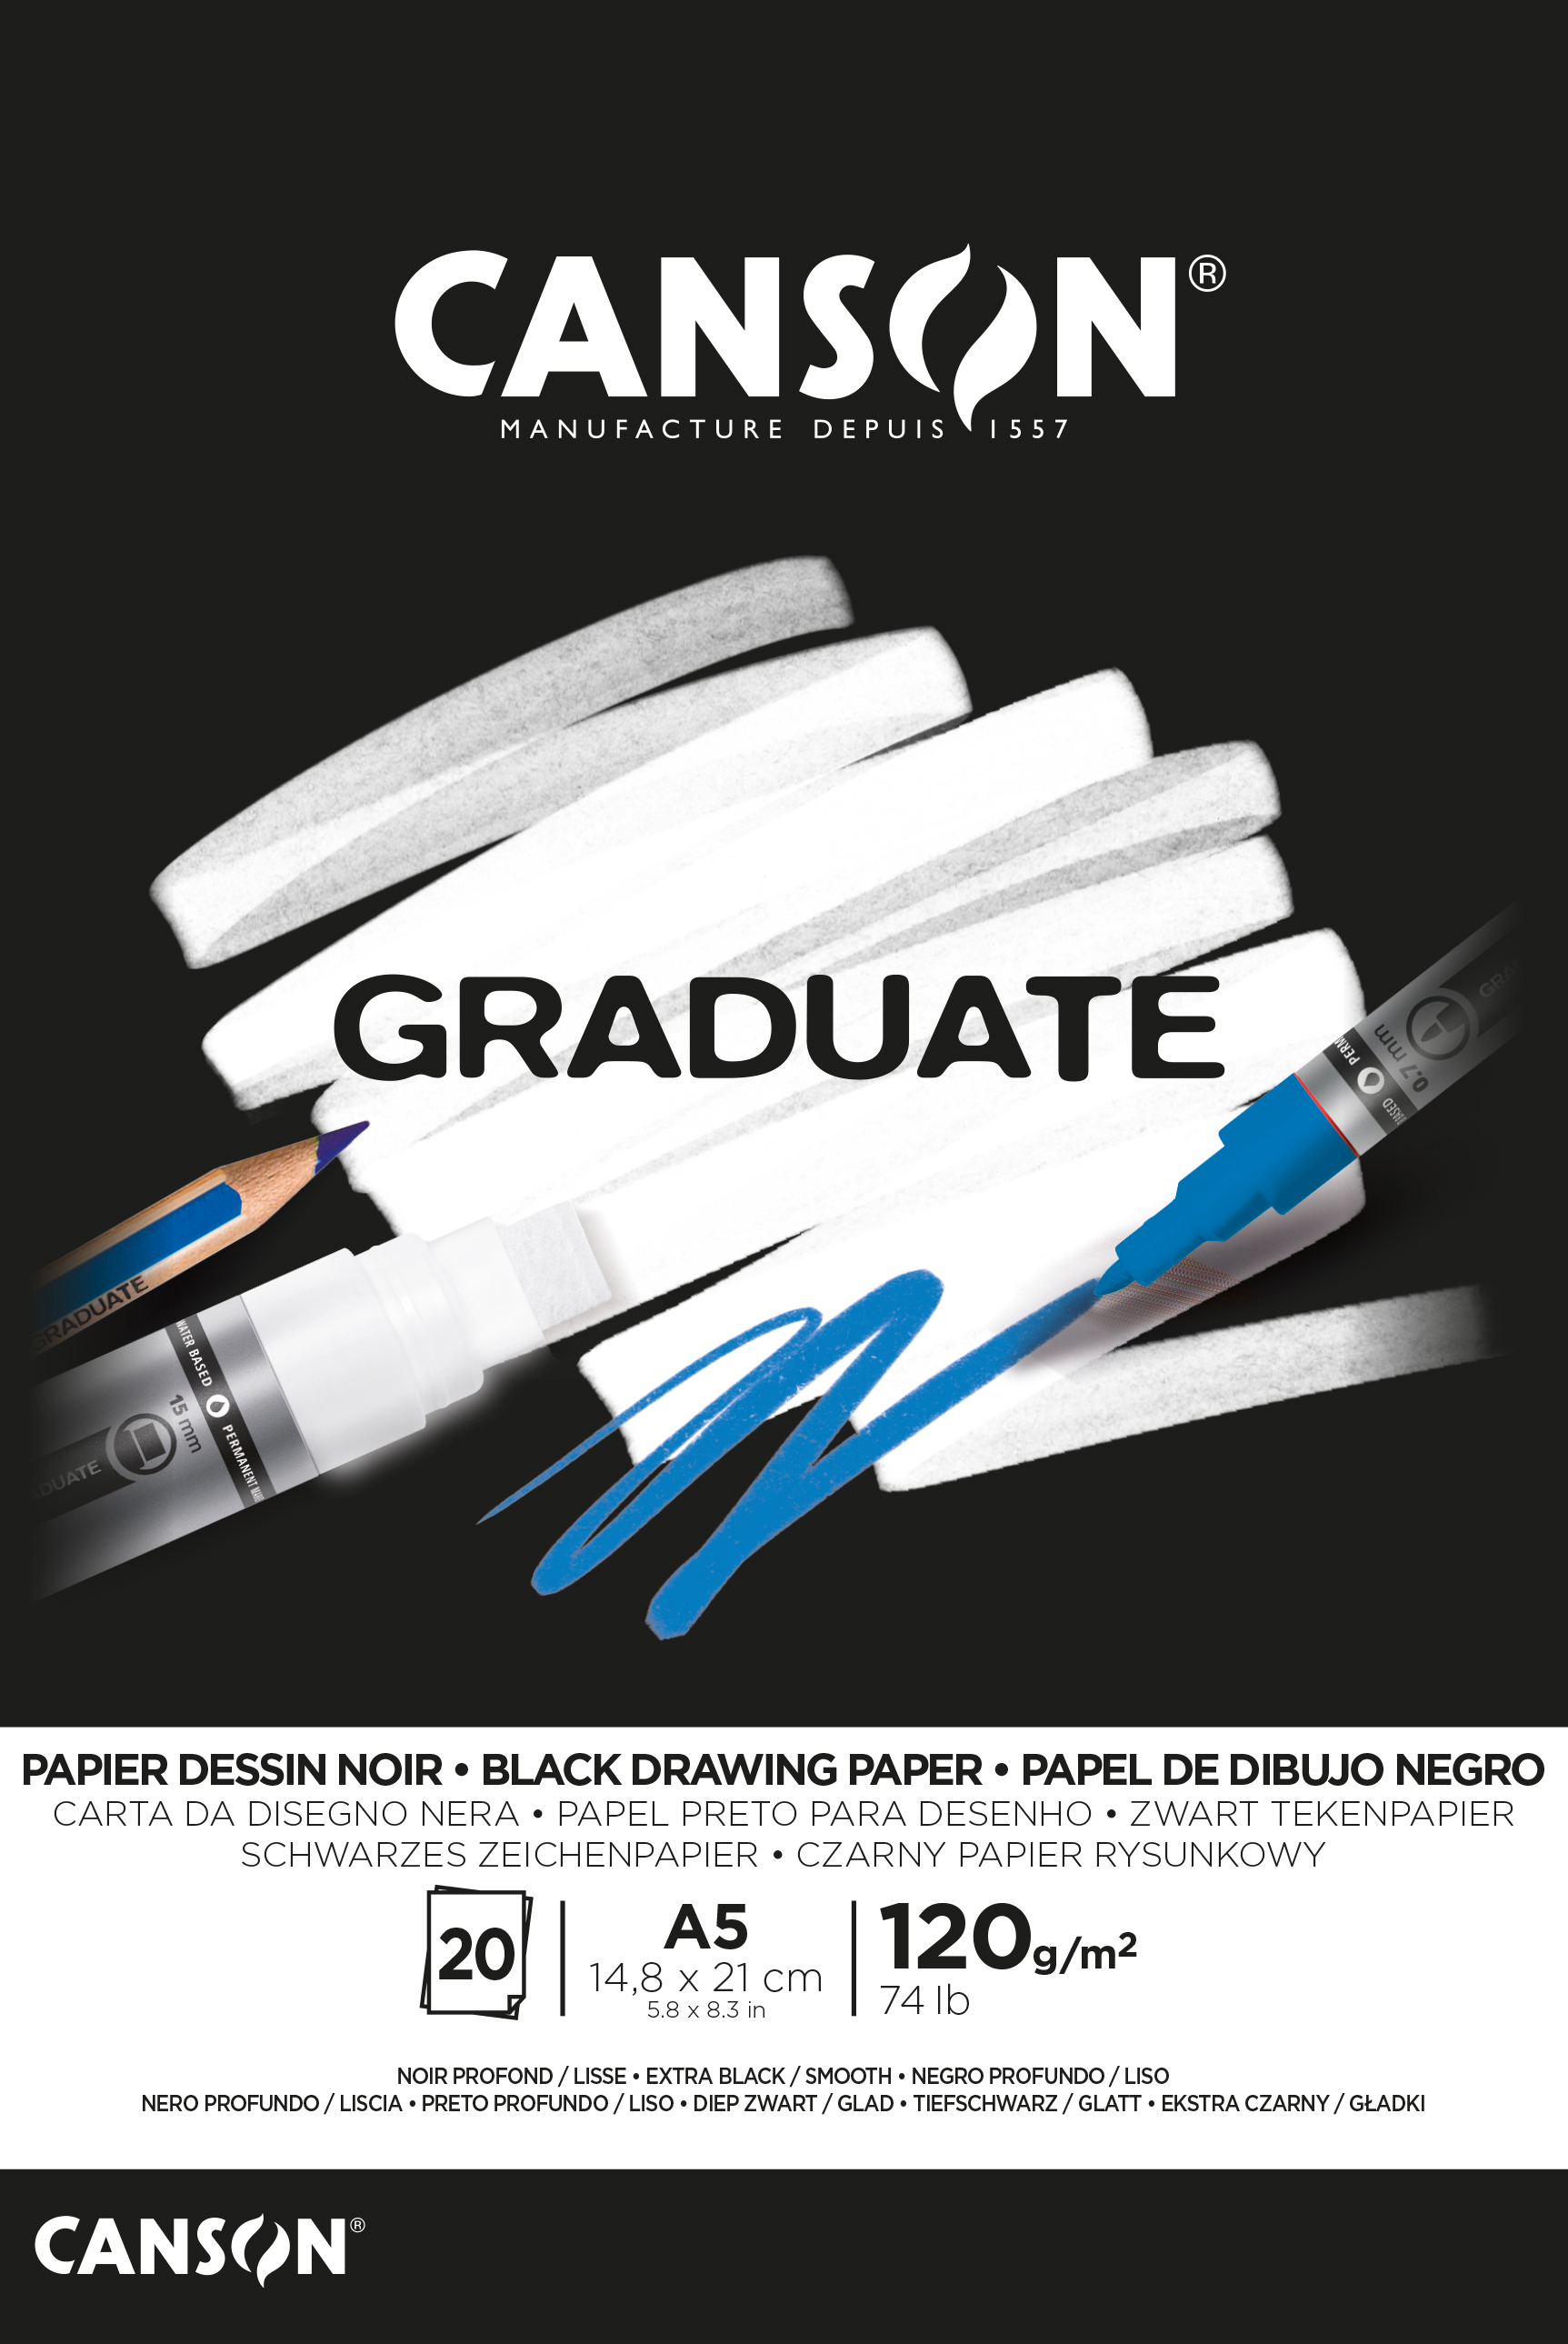 CANSON Graduate papier à dessin A5 400110385 20 flles, noire, 120g